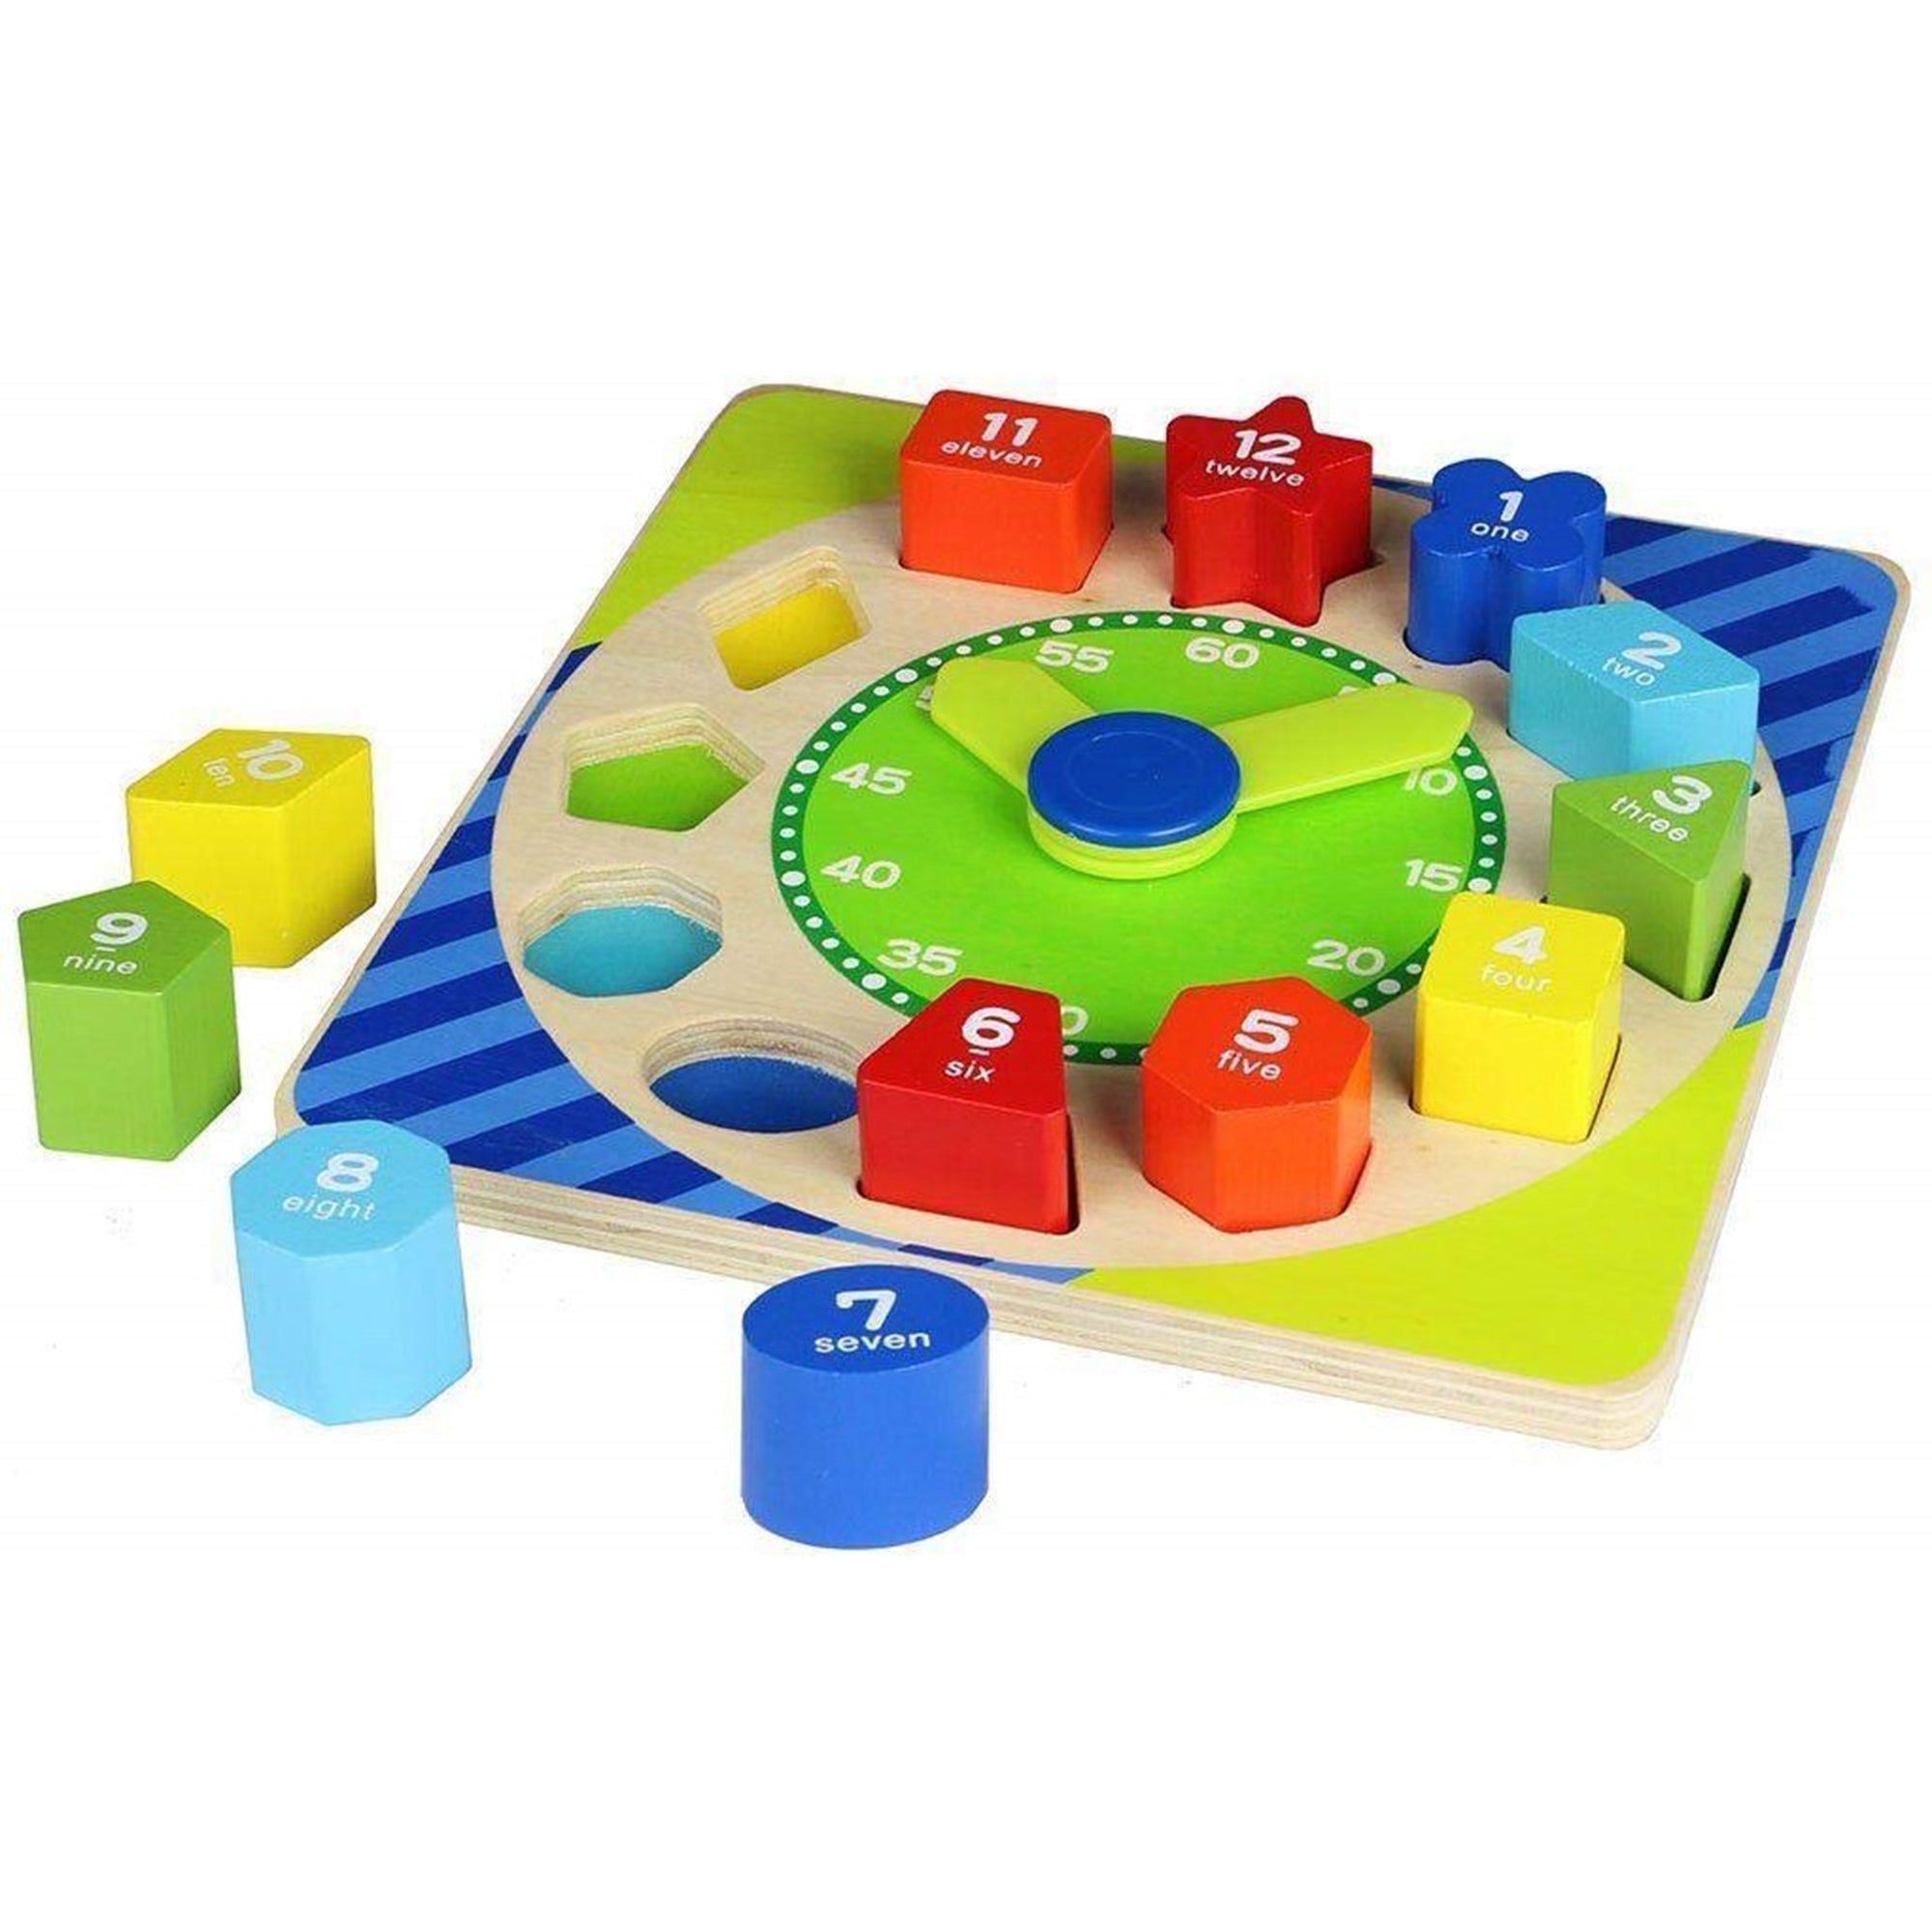 Giocattolo per bambini orologio con blocchi numerati in legno colorato 2759